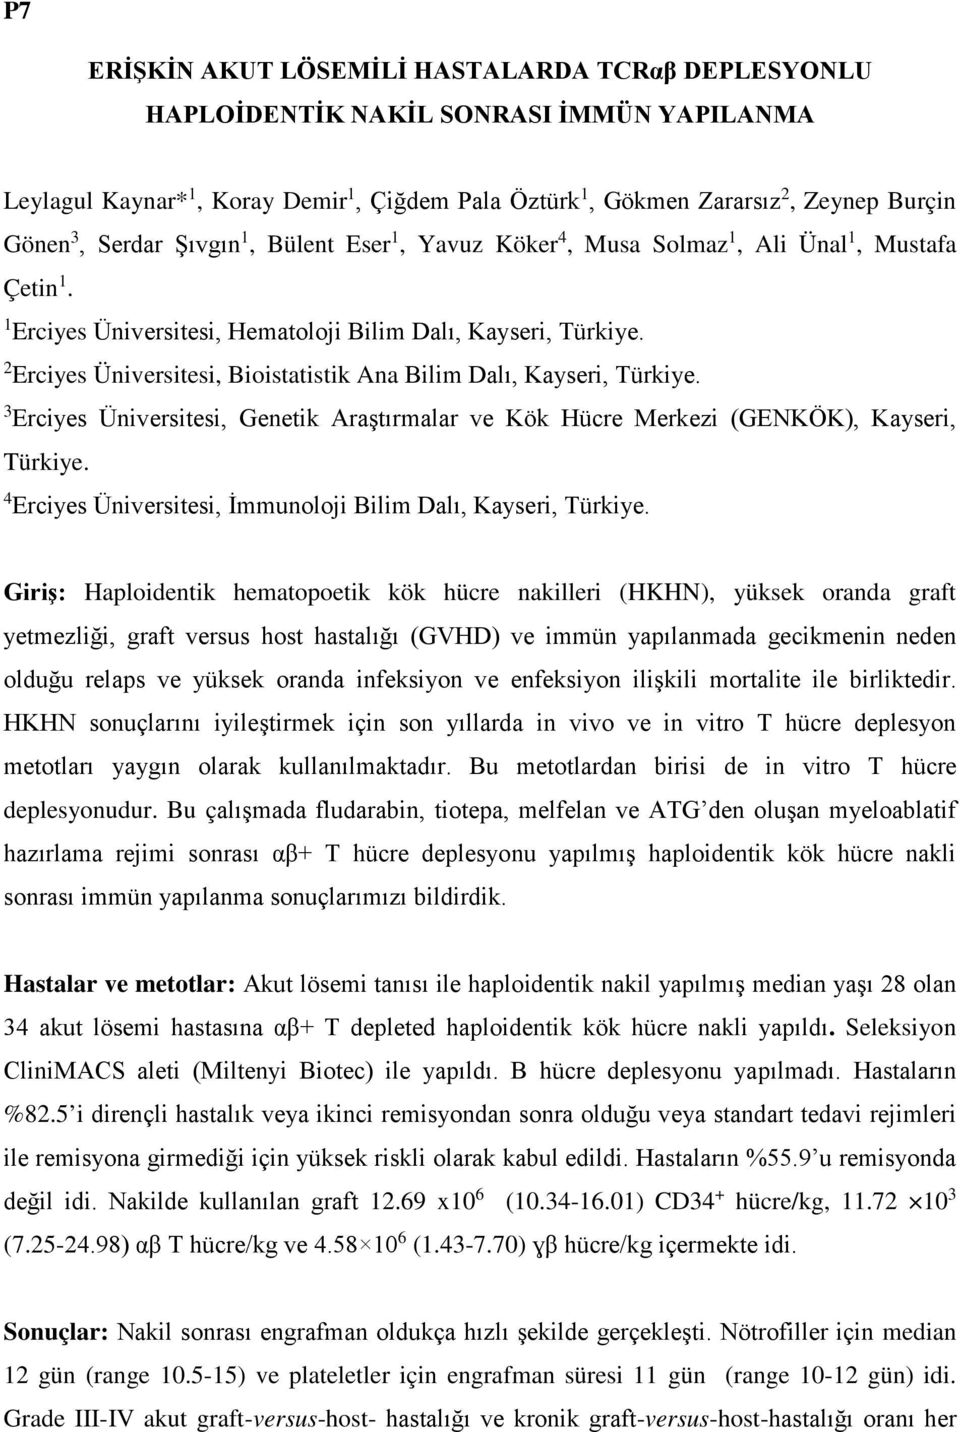 2 Erciyes Üniversitesi, Bioistatistik Ana Bilim Dalı, Kayseri, Türkiye. 3 Erciyes Üniversitesi, Genetik Araştırmalar ve Kök Hücre Merkezi (GENKÖK), Kayseri, Türkiye.